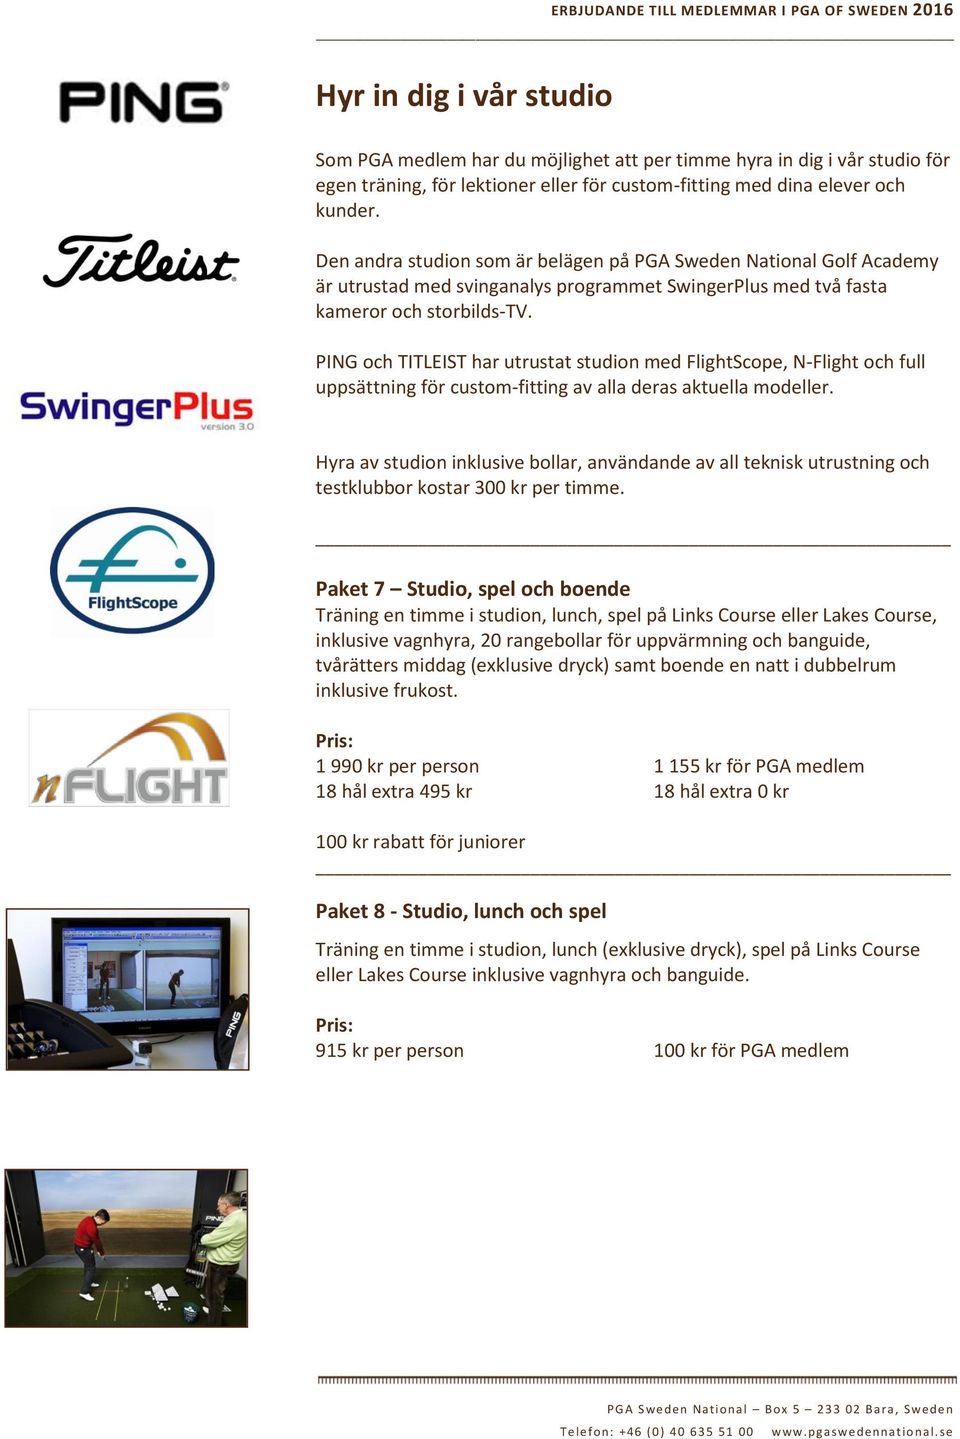 PING och TITLEIST har utrustat studion med FlightScope, N-Flight och full uppsättning för custom-fitting av alla deras aktuella modeller.